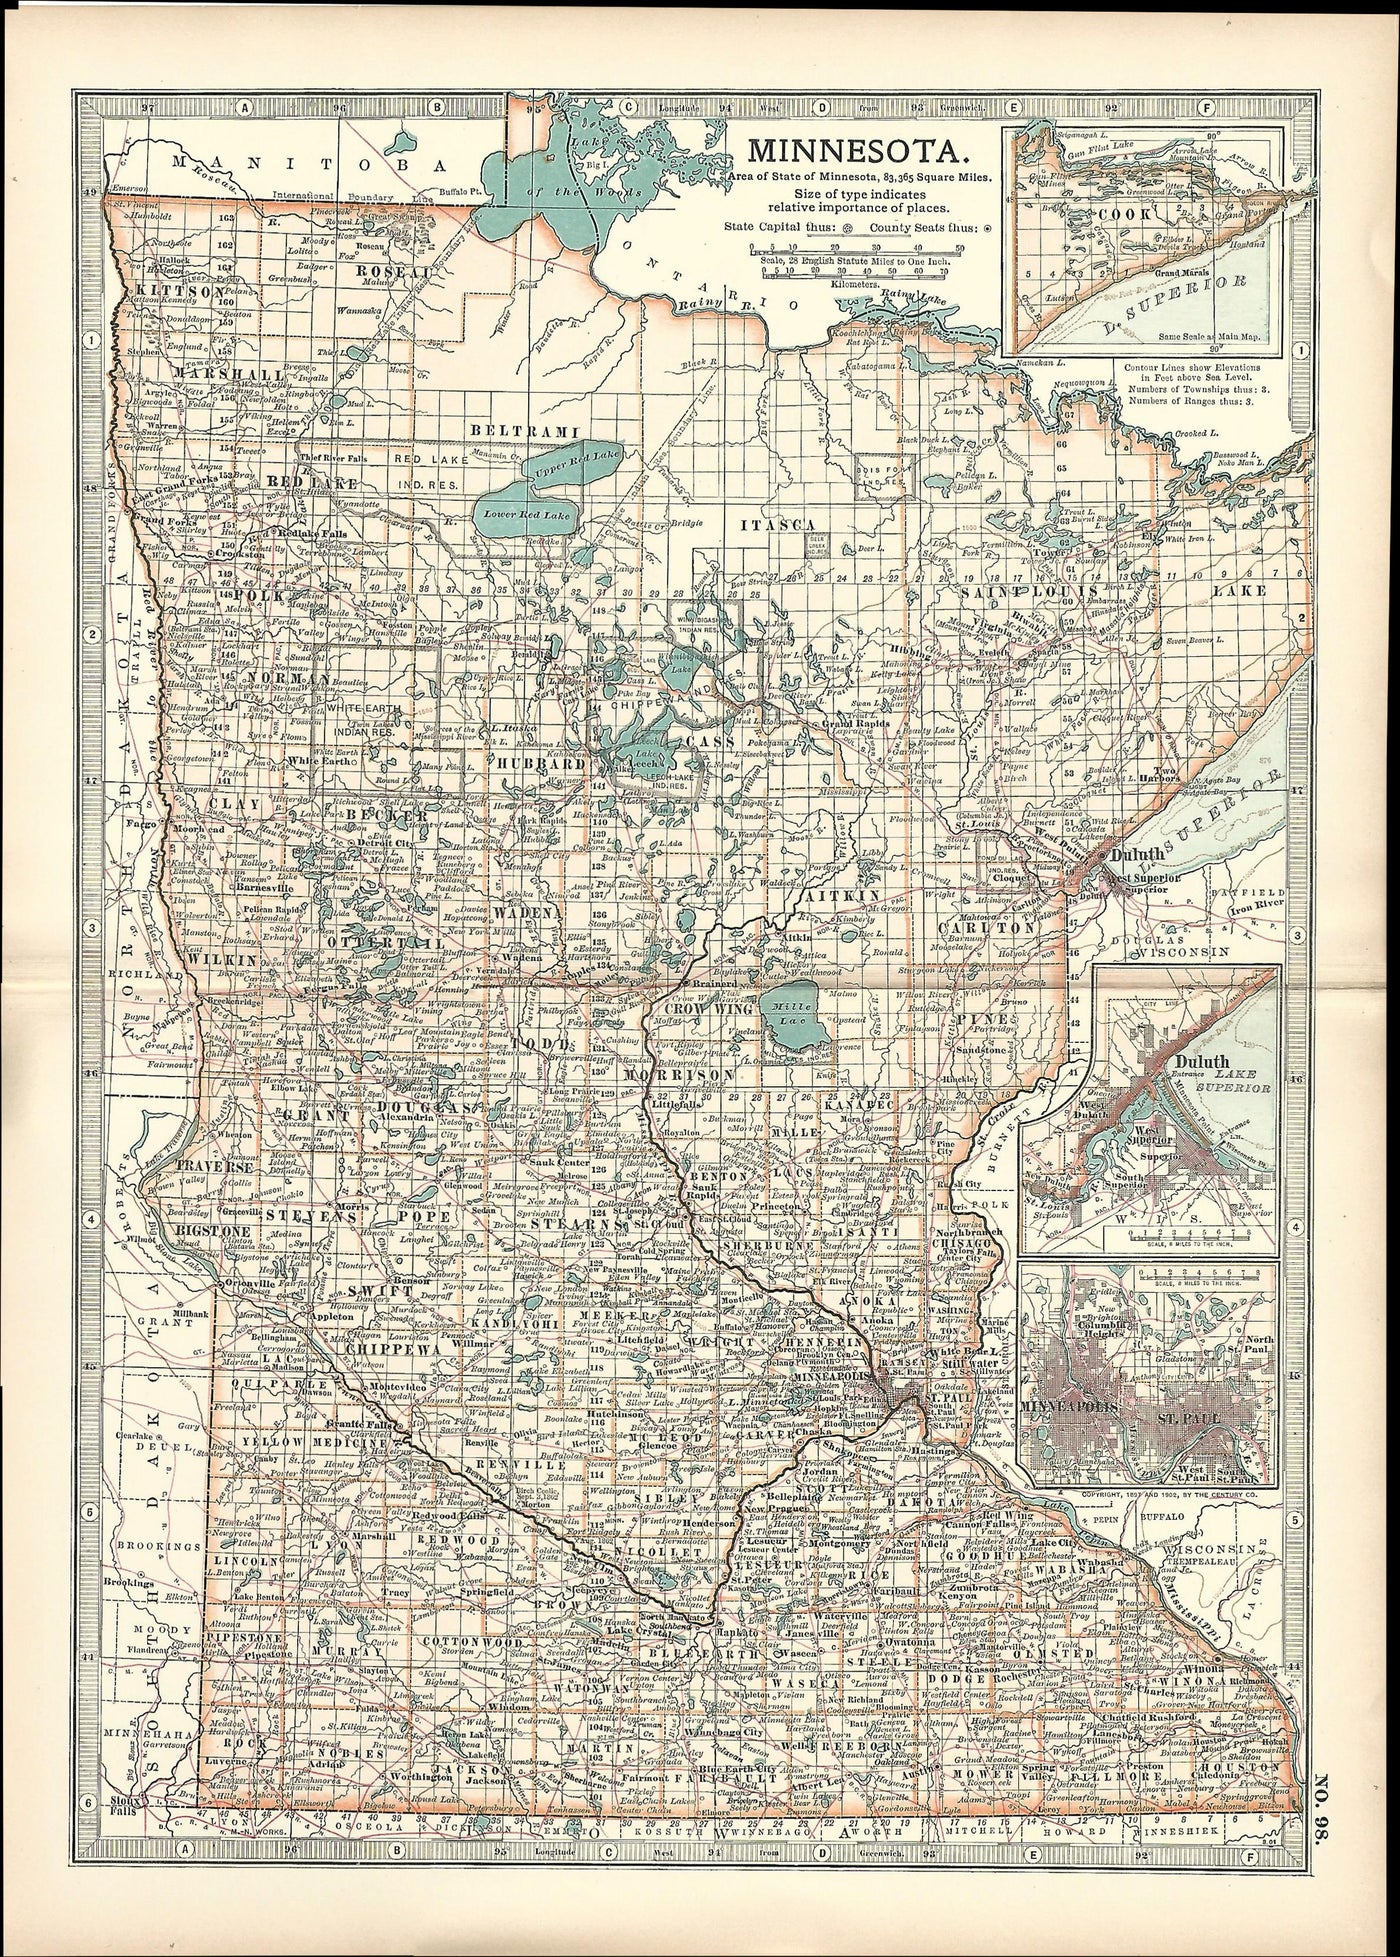 Minnesota, No.98, Encyclopaedia Britannica 1903